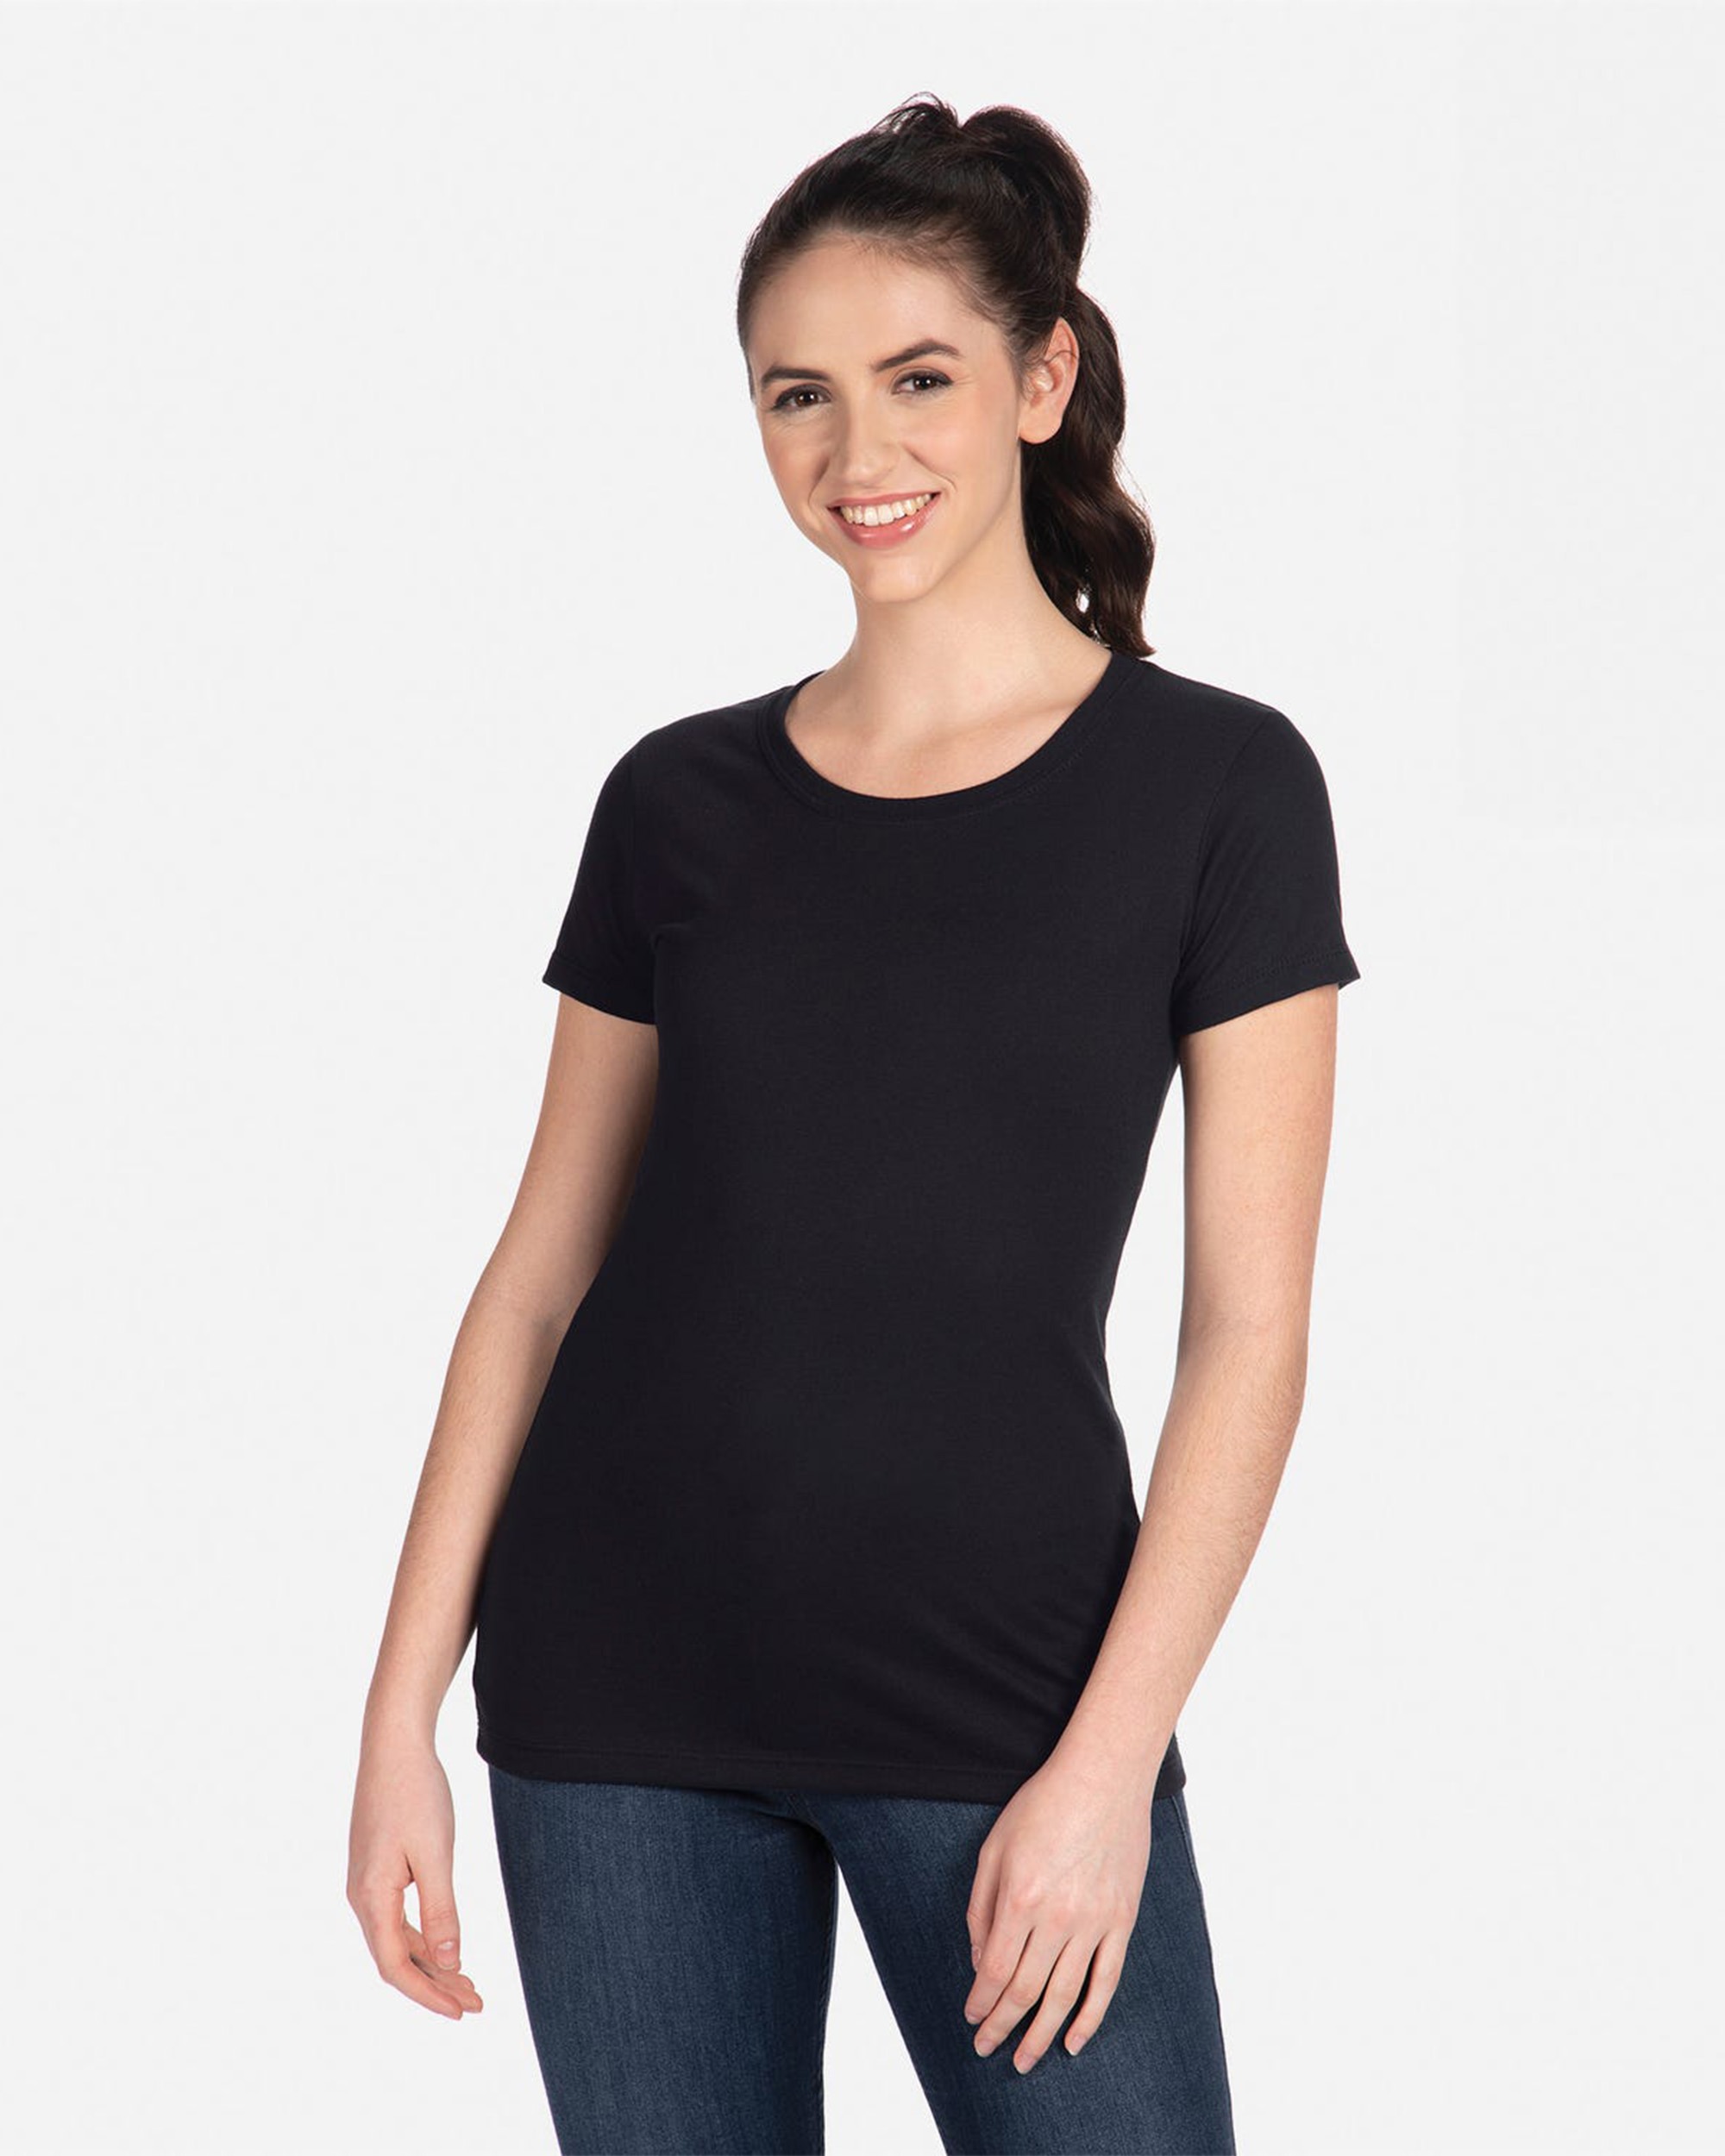 Next Level Apparel® 1510 Women's Ideal T-Shirt